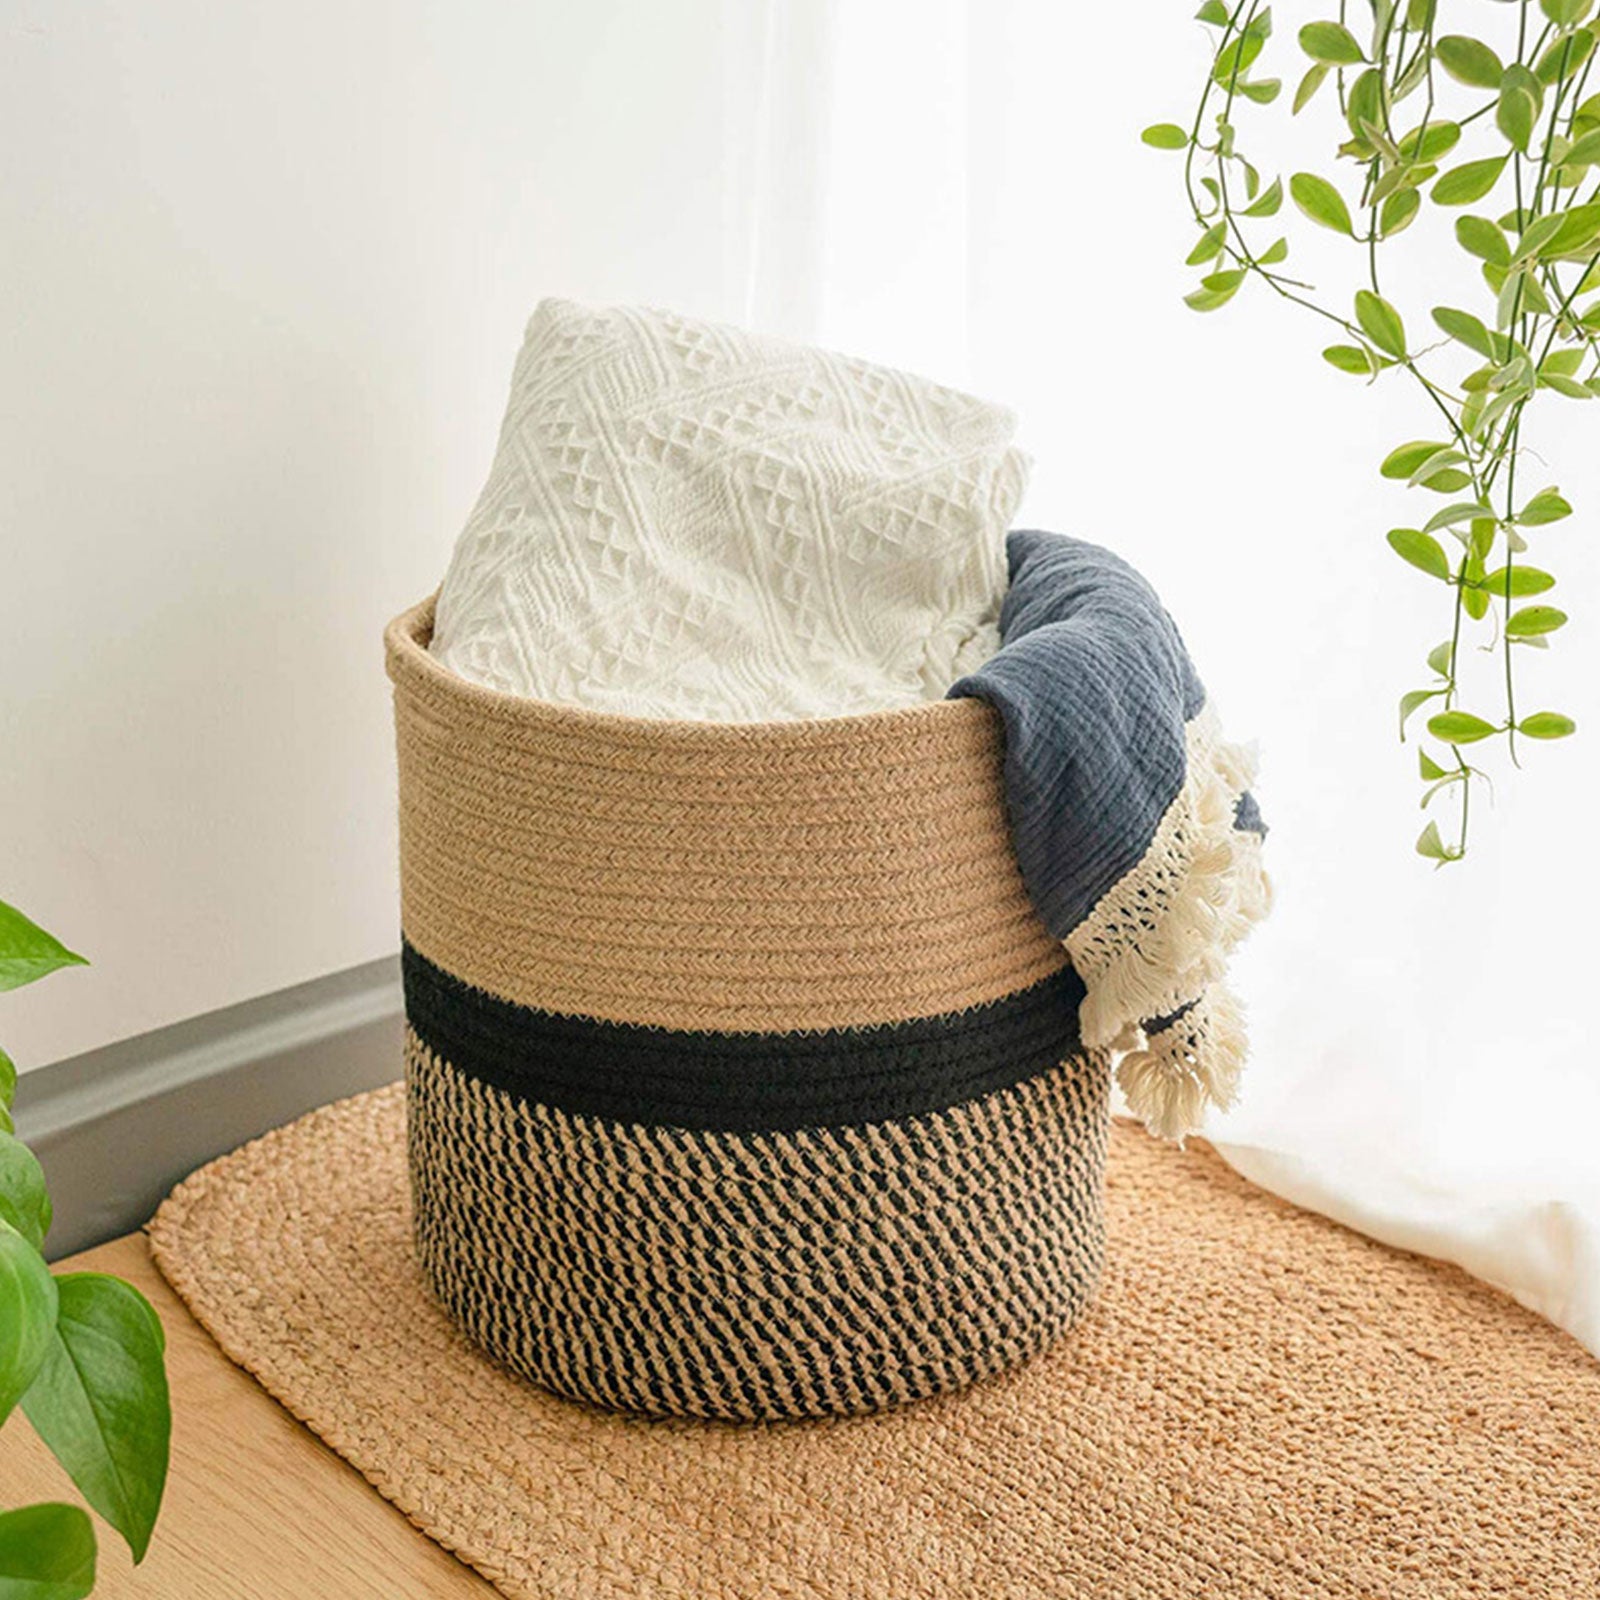 Round Crop Basket Decorative Woven